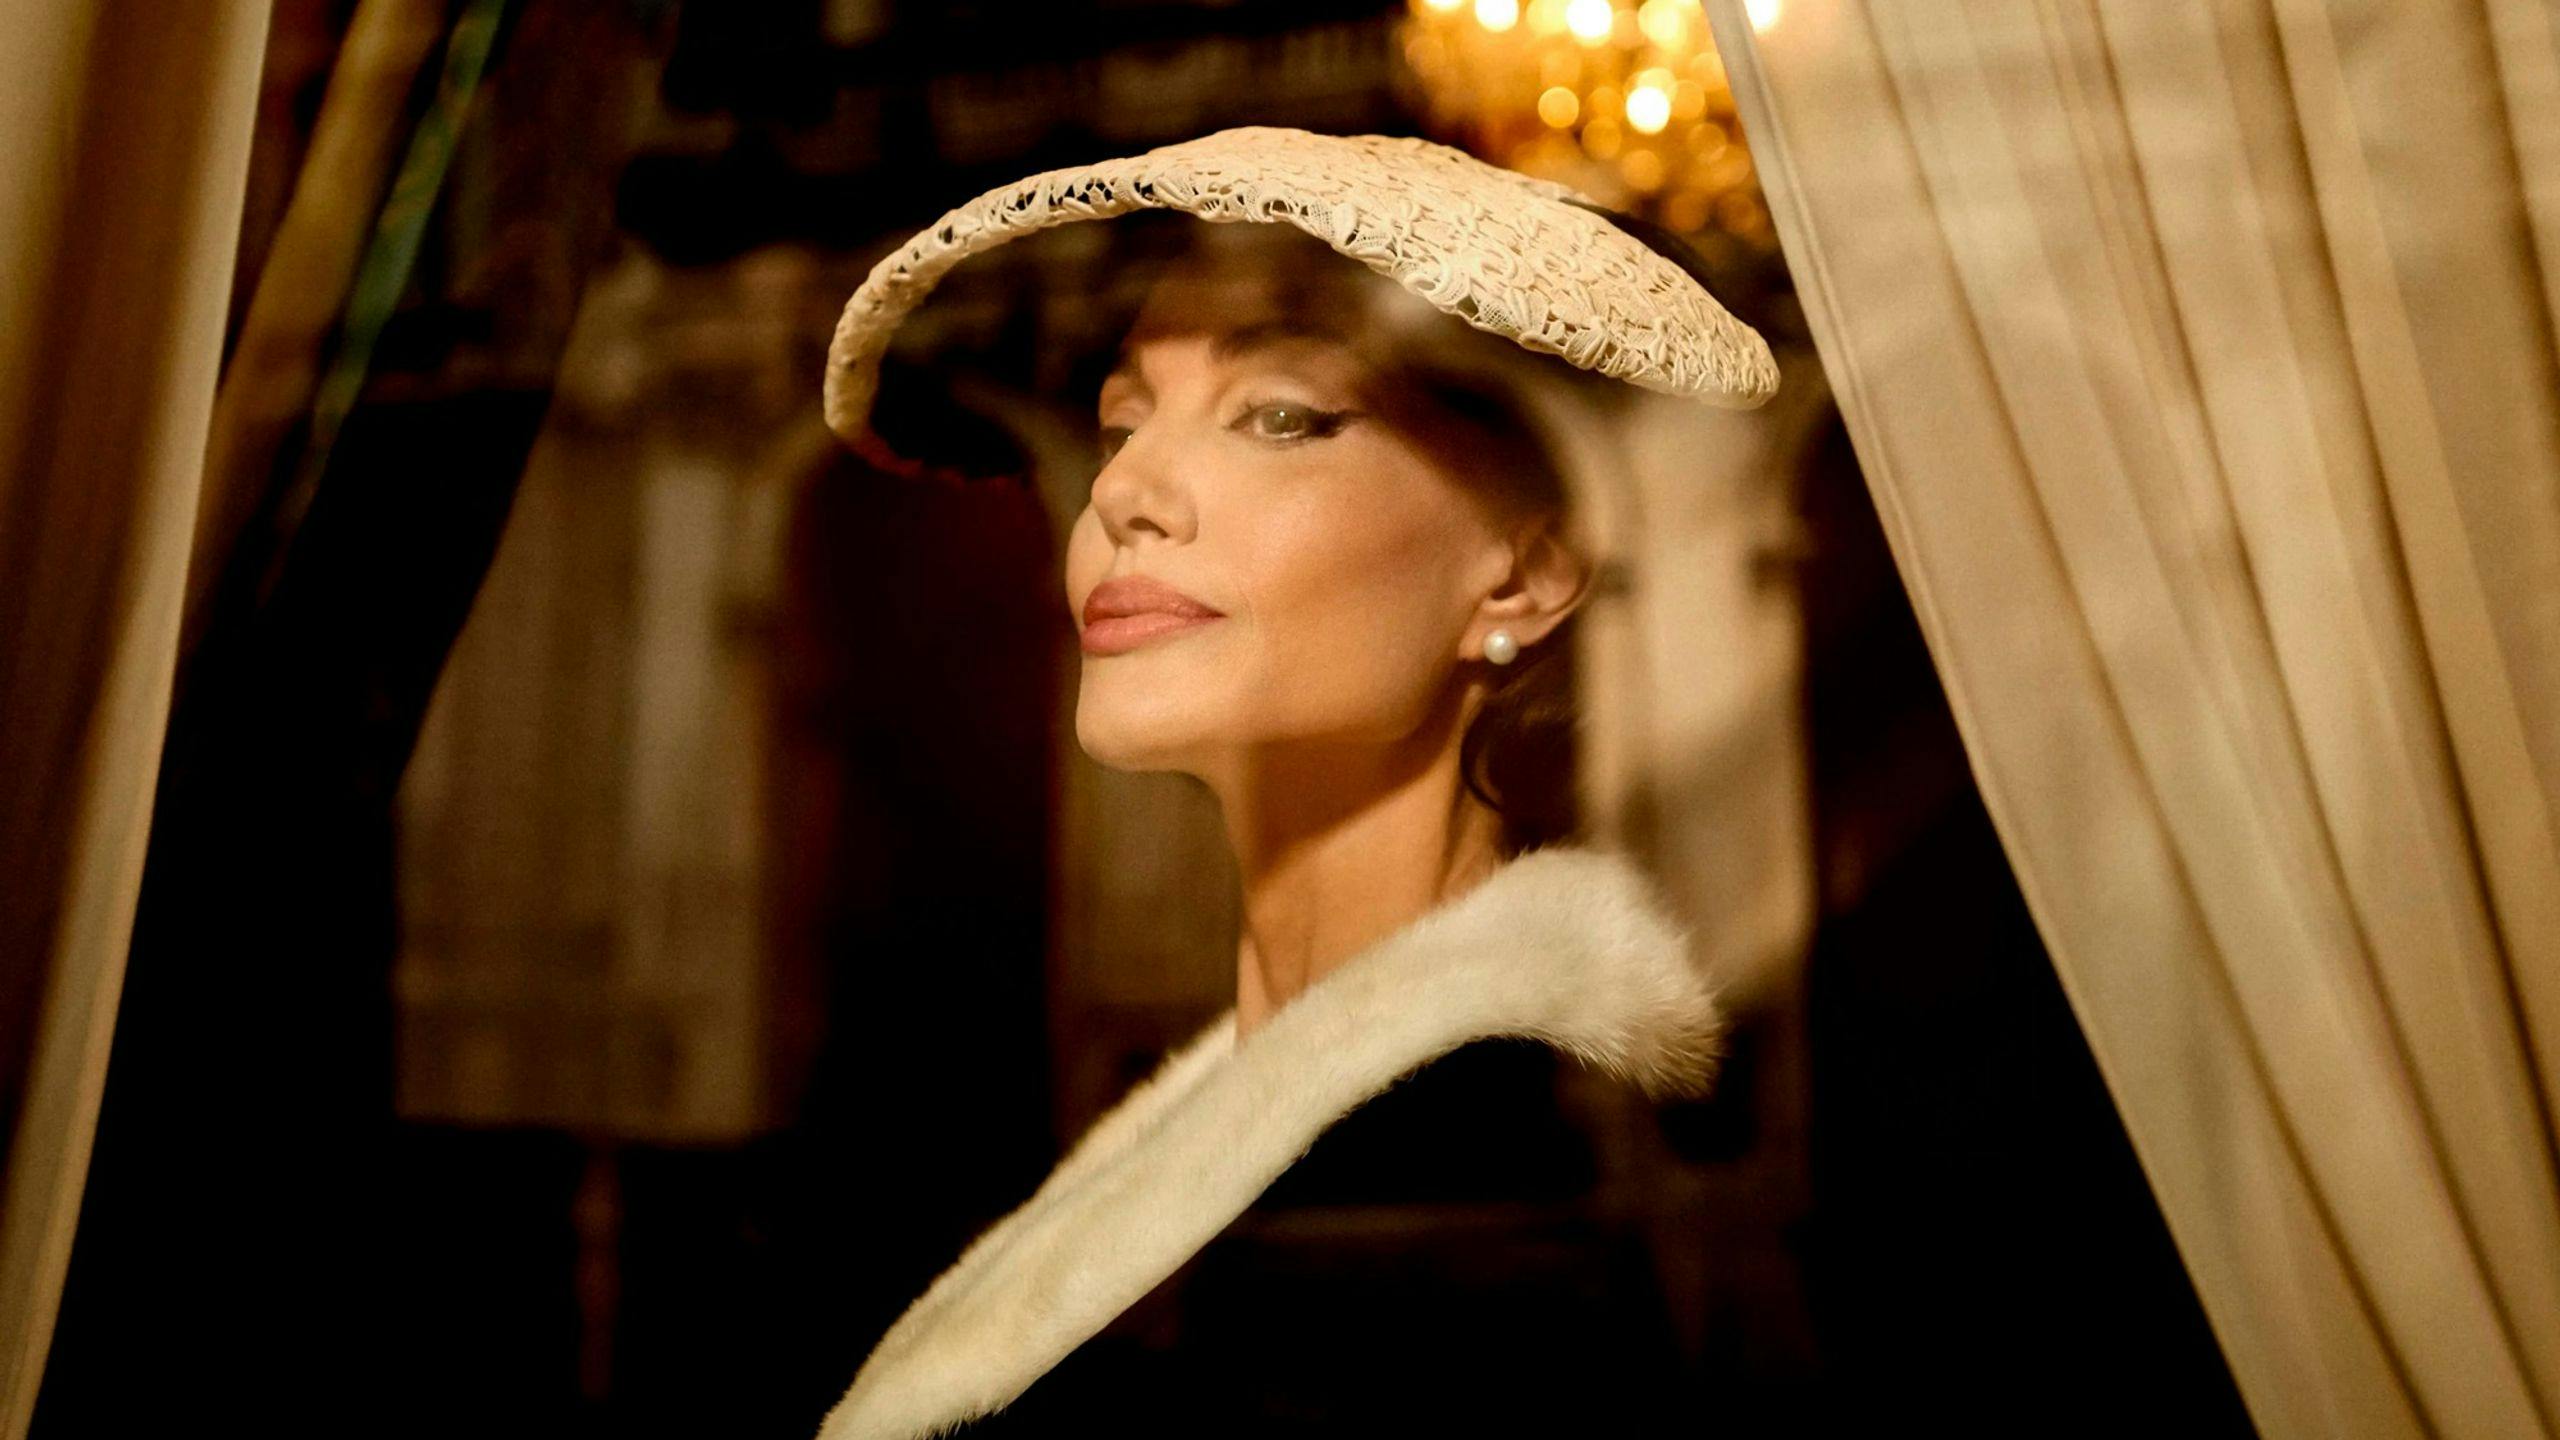 Fotograma promocional de 'María', de Pablo Larraín', con Angelina Jolie dando vida a María Callas